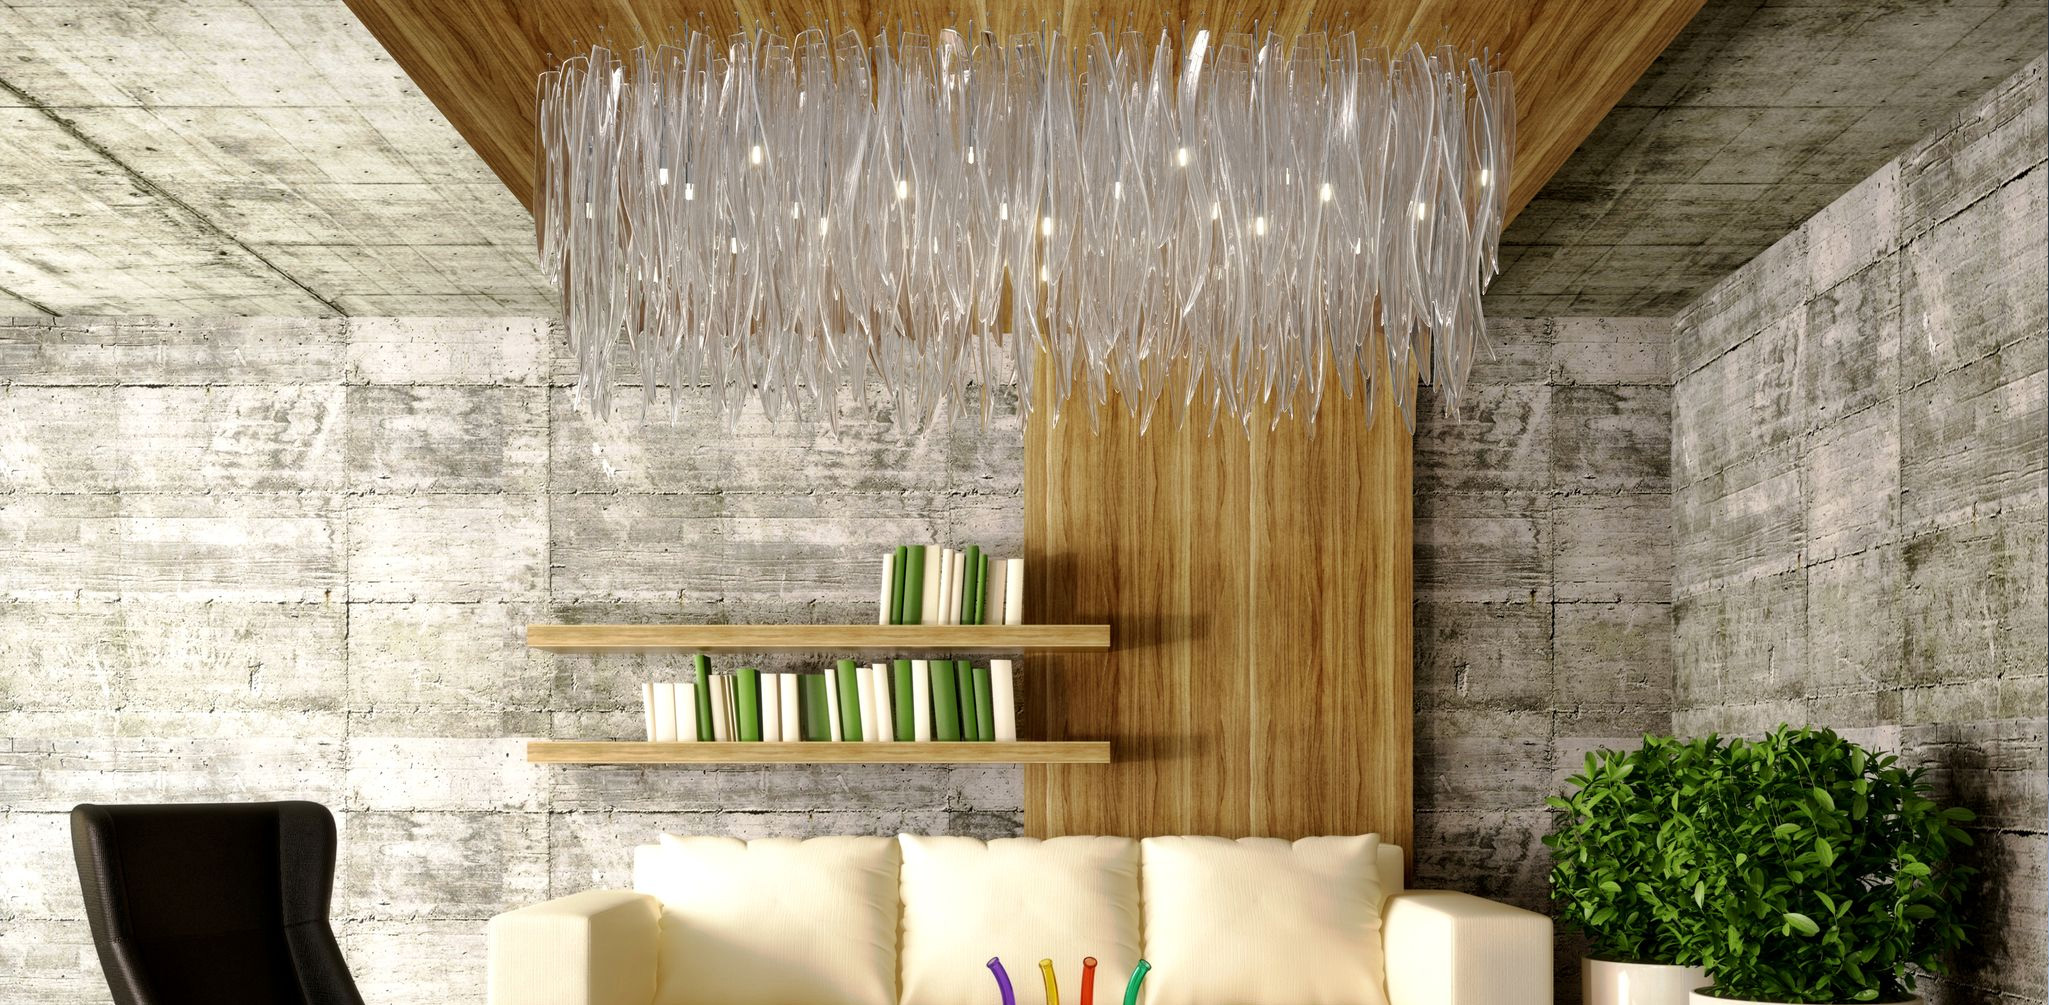 Glass chandelier Grass in modern interior